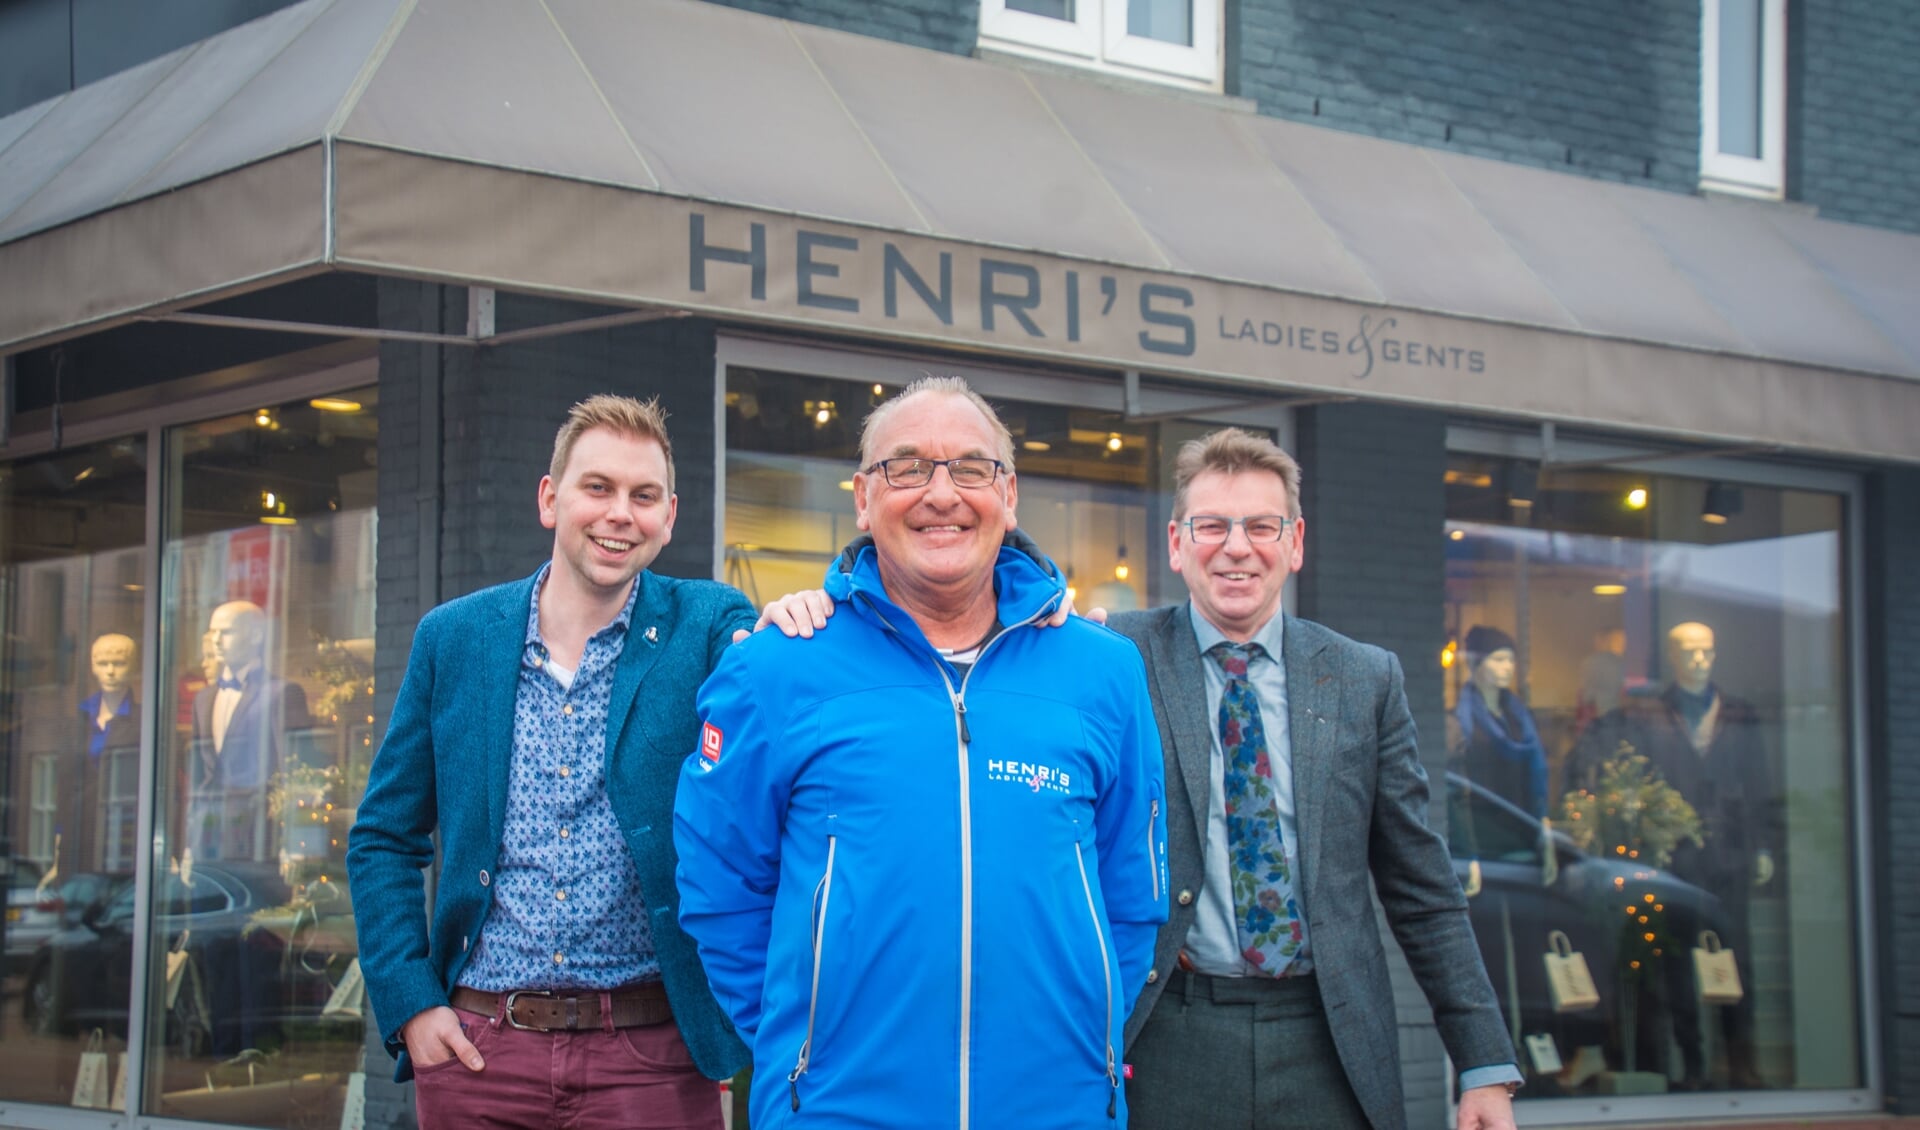 Bram en Harry Beening van Henri's Ladies & Gents poseren met Wielercomité-vrijwilliger Cees van Wijk, die zijn NK-jas draagt.